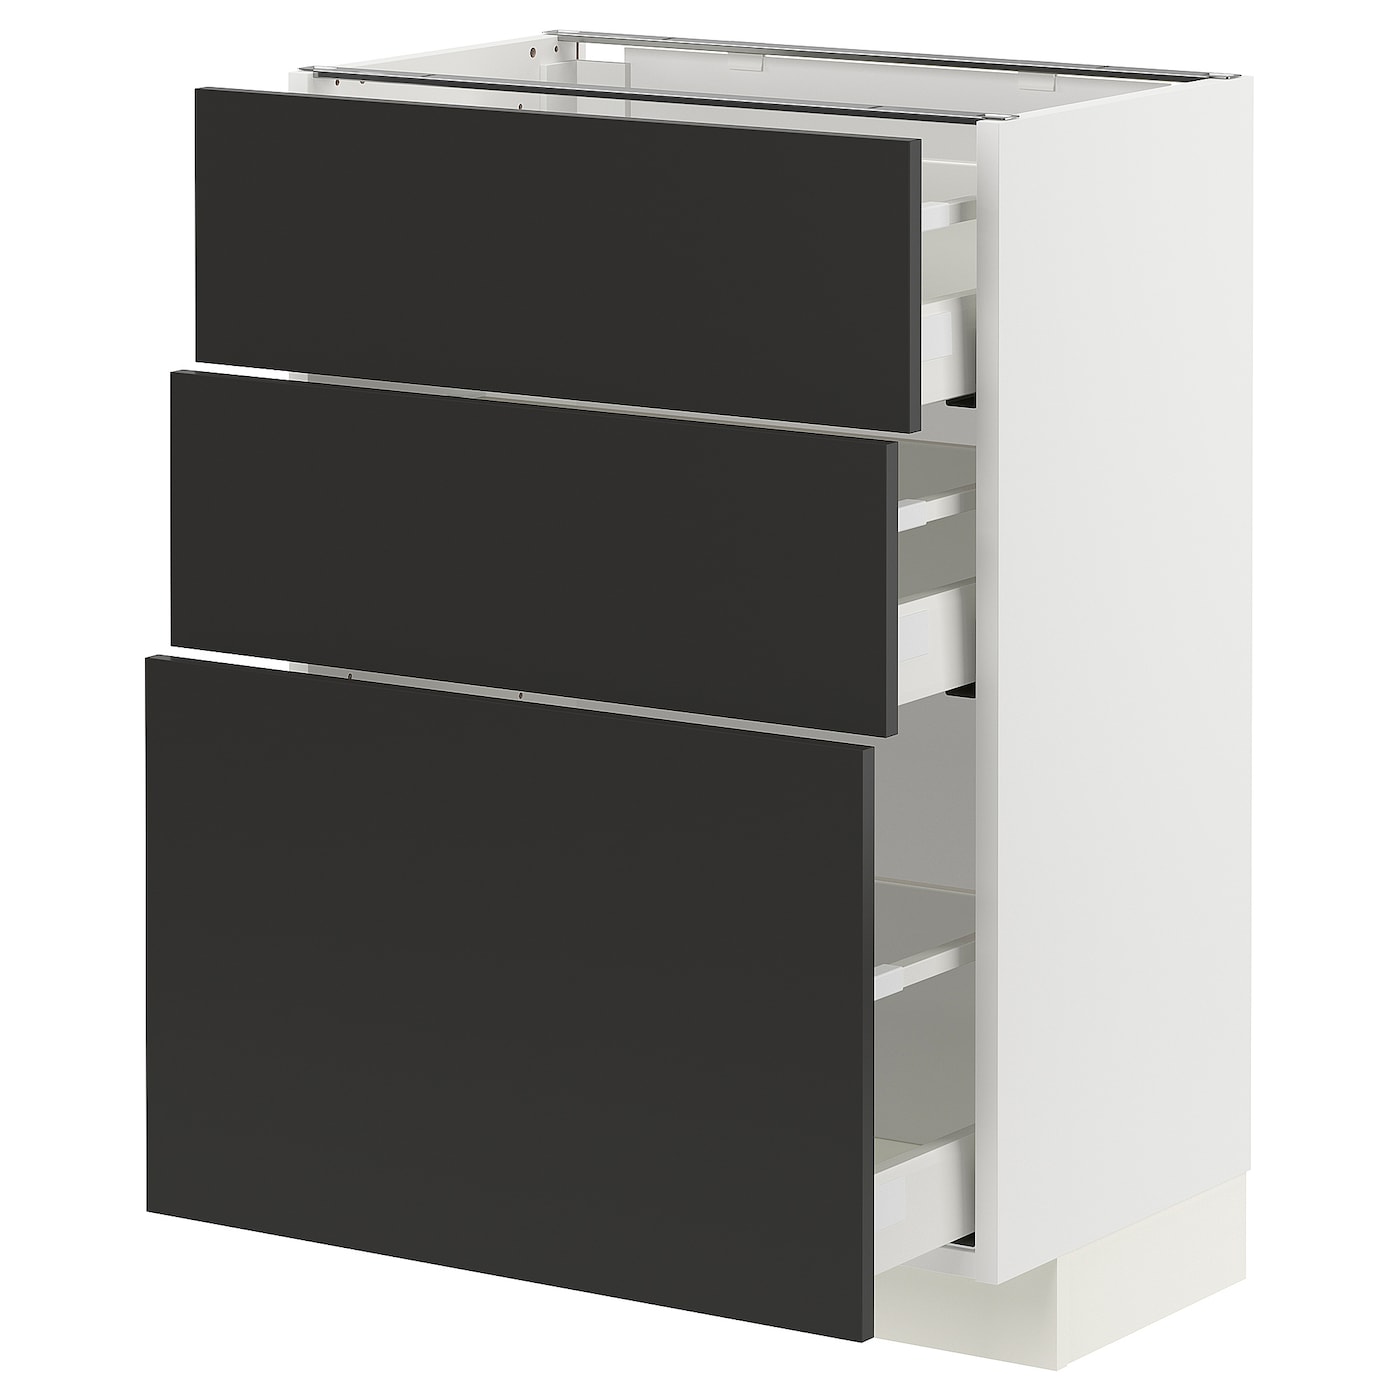 Напольный шкаф - METOD / MAXIMERA IKEA/ МЕТОД/ МАКСИМЕРА ИКЕА,  88х60 см, белый/черный